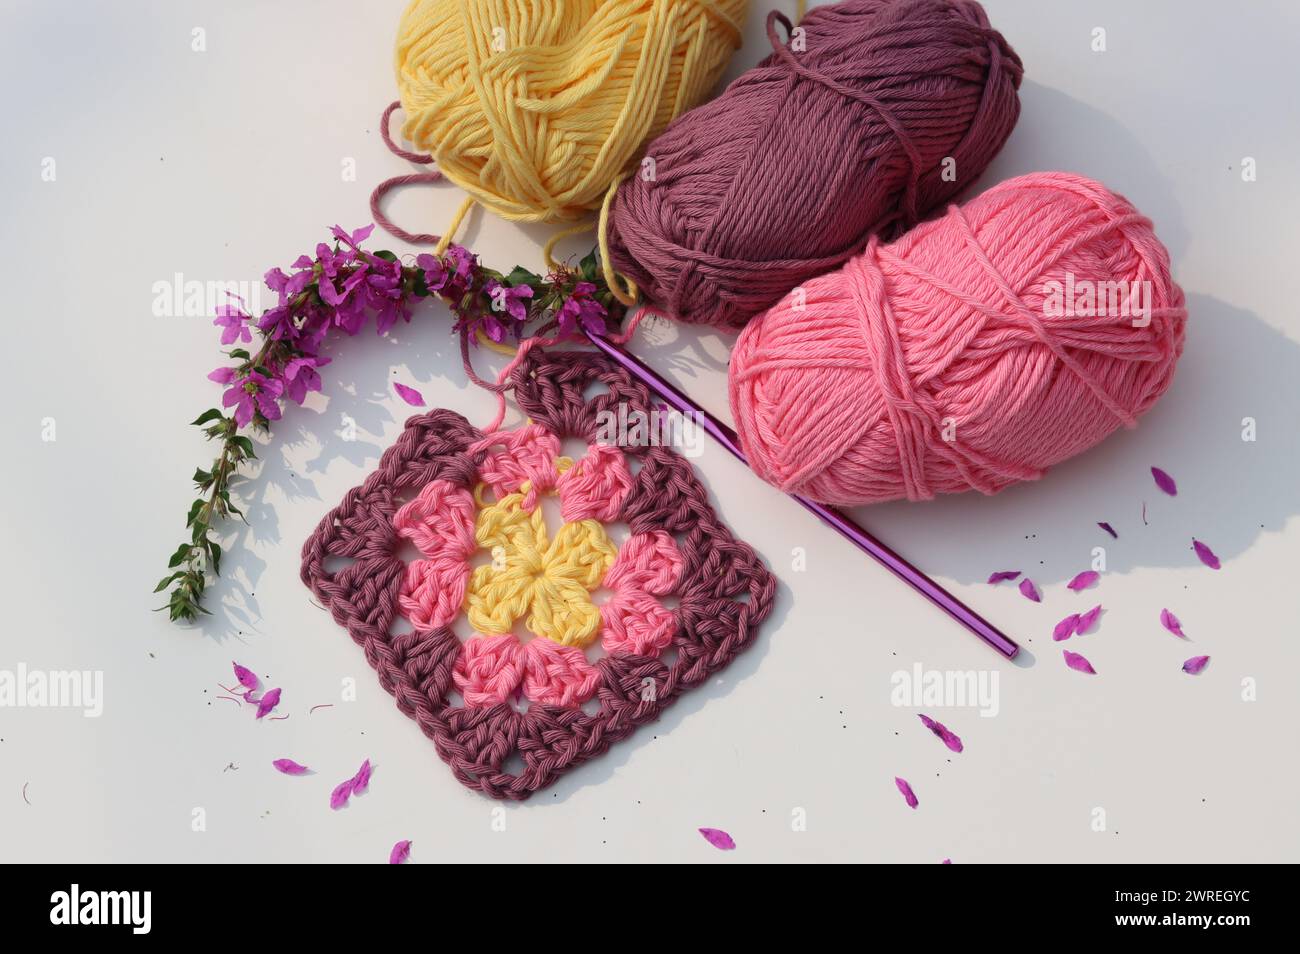 Carré Granny crocheté rose, boules de fil de coton doux de différentes nuances de couleur rose. Fond blanc avec espace de copie. Concept de crochet de ressort. Banque D'Images